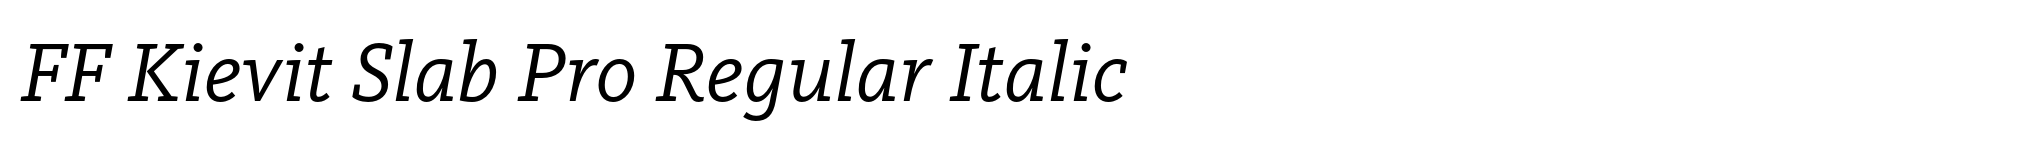 FF Kievit Slab Pro Regular Italic image